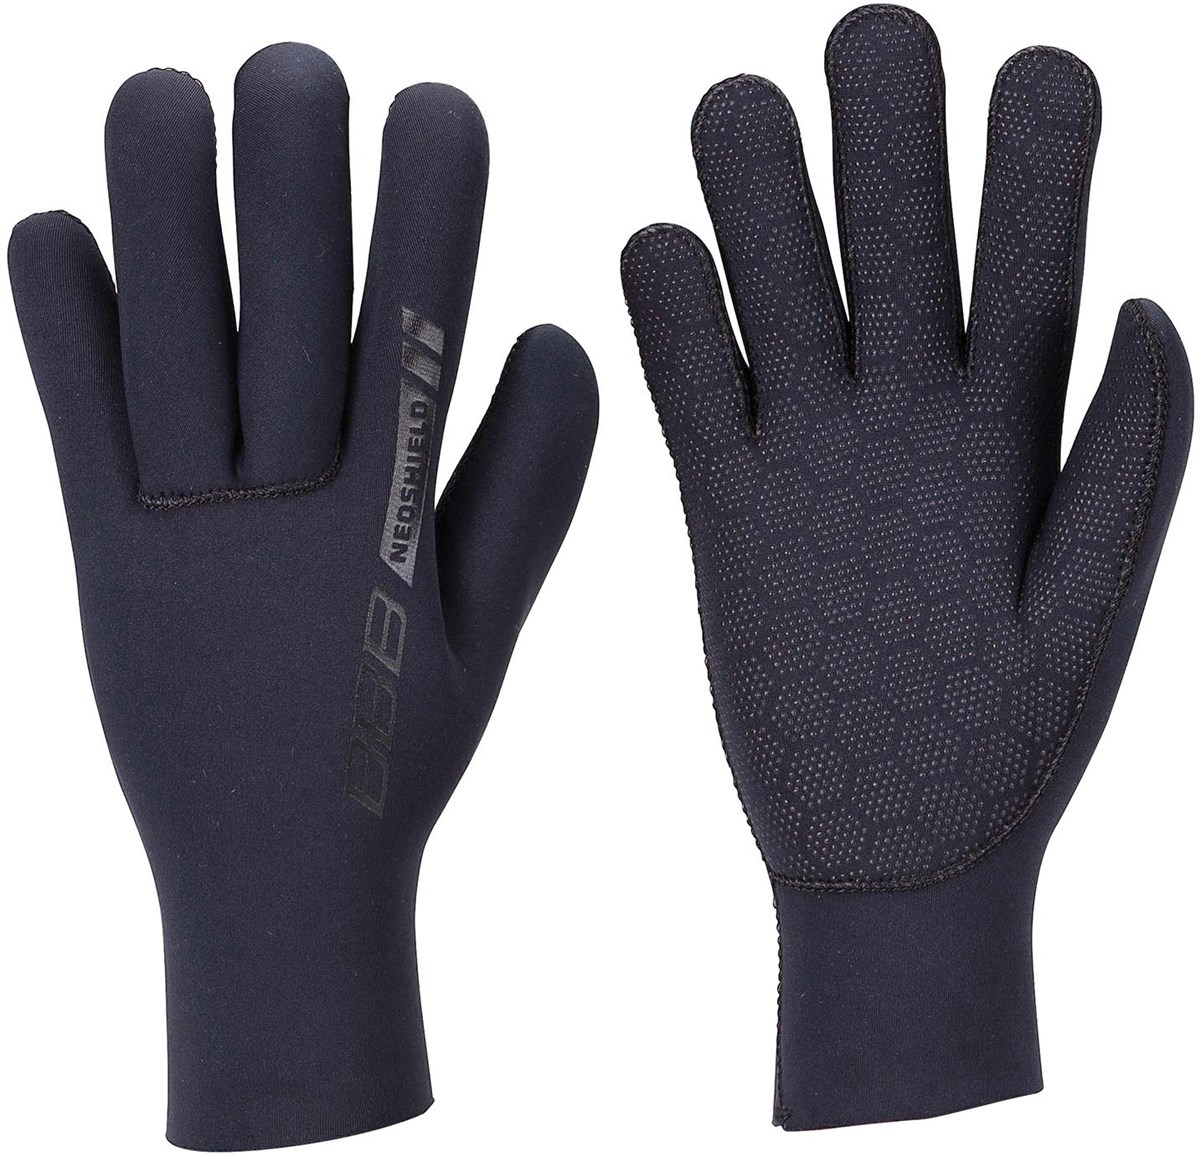 BBB BWG-26 NeoShield Winter Long Finger Gloves product image